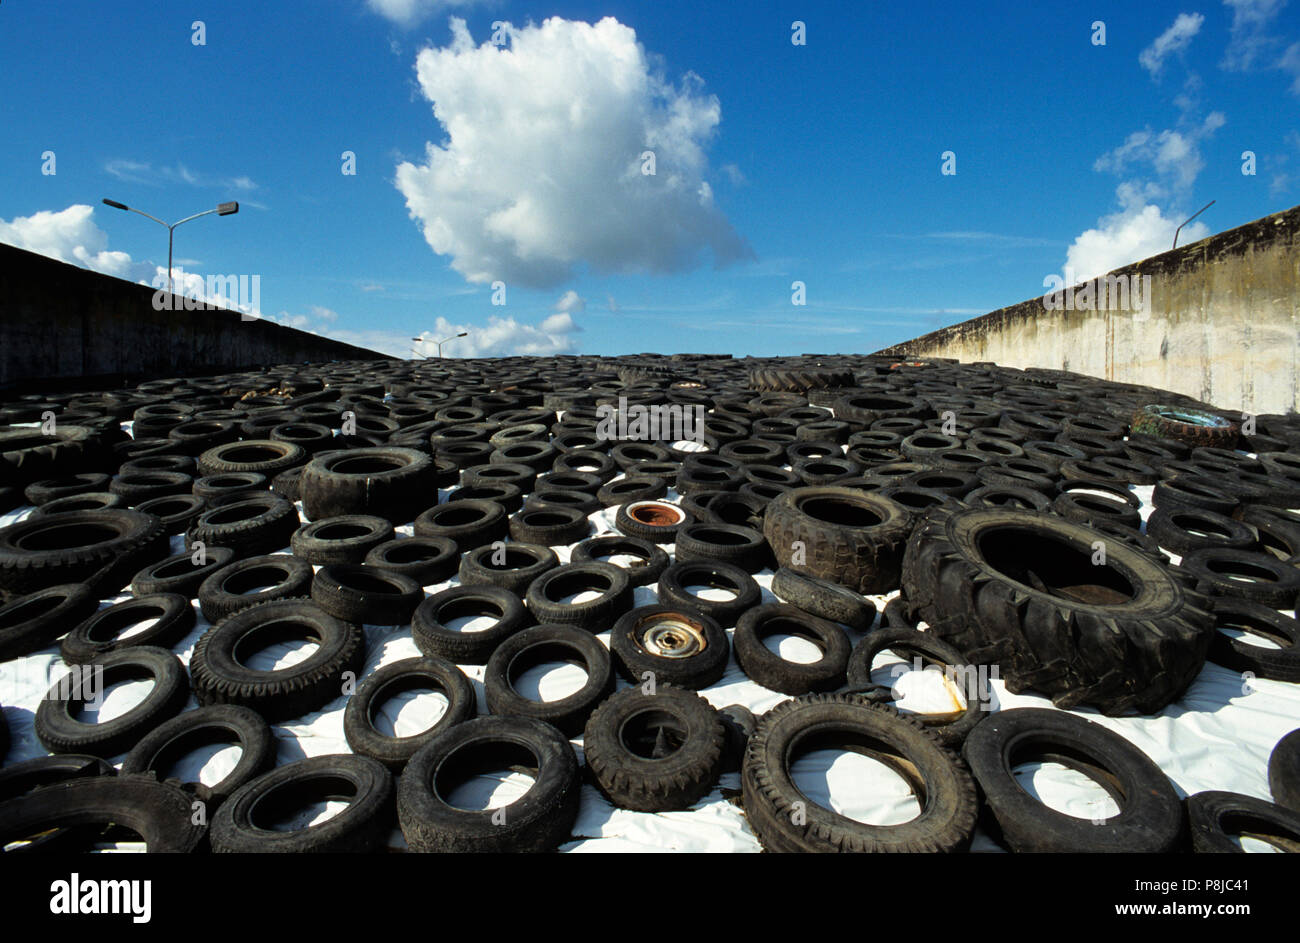 Neumáticos de coches usados sobre una lámina de silo. Foto de stock